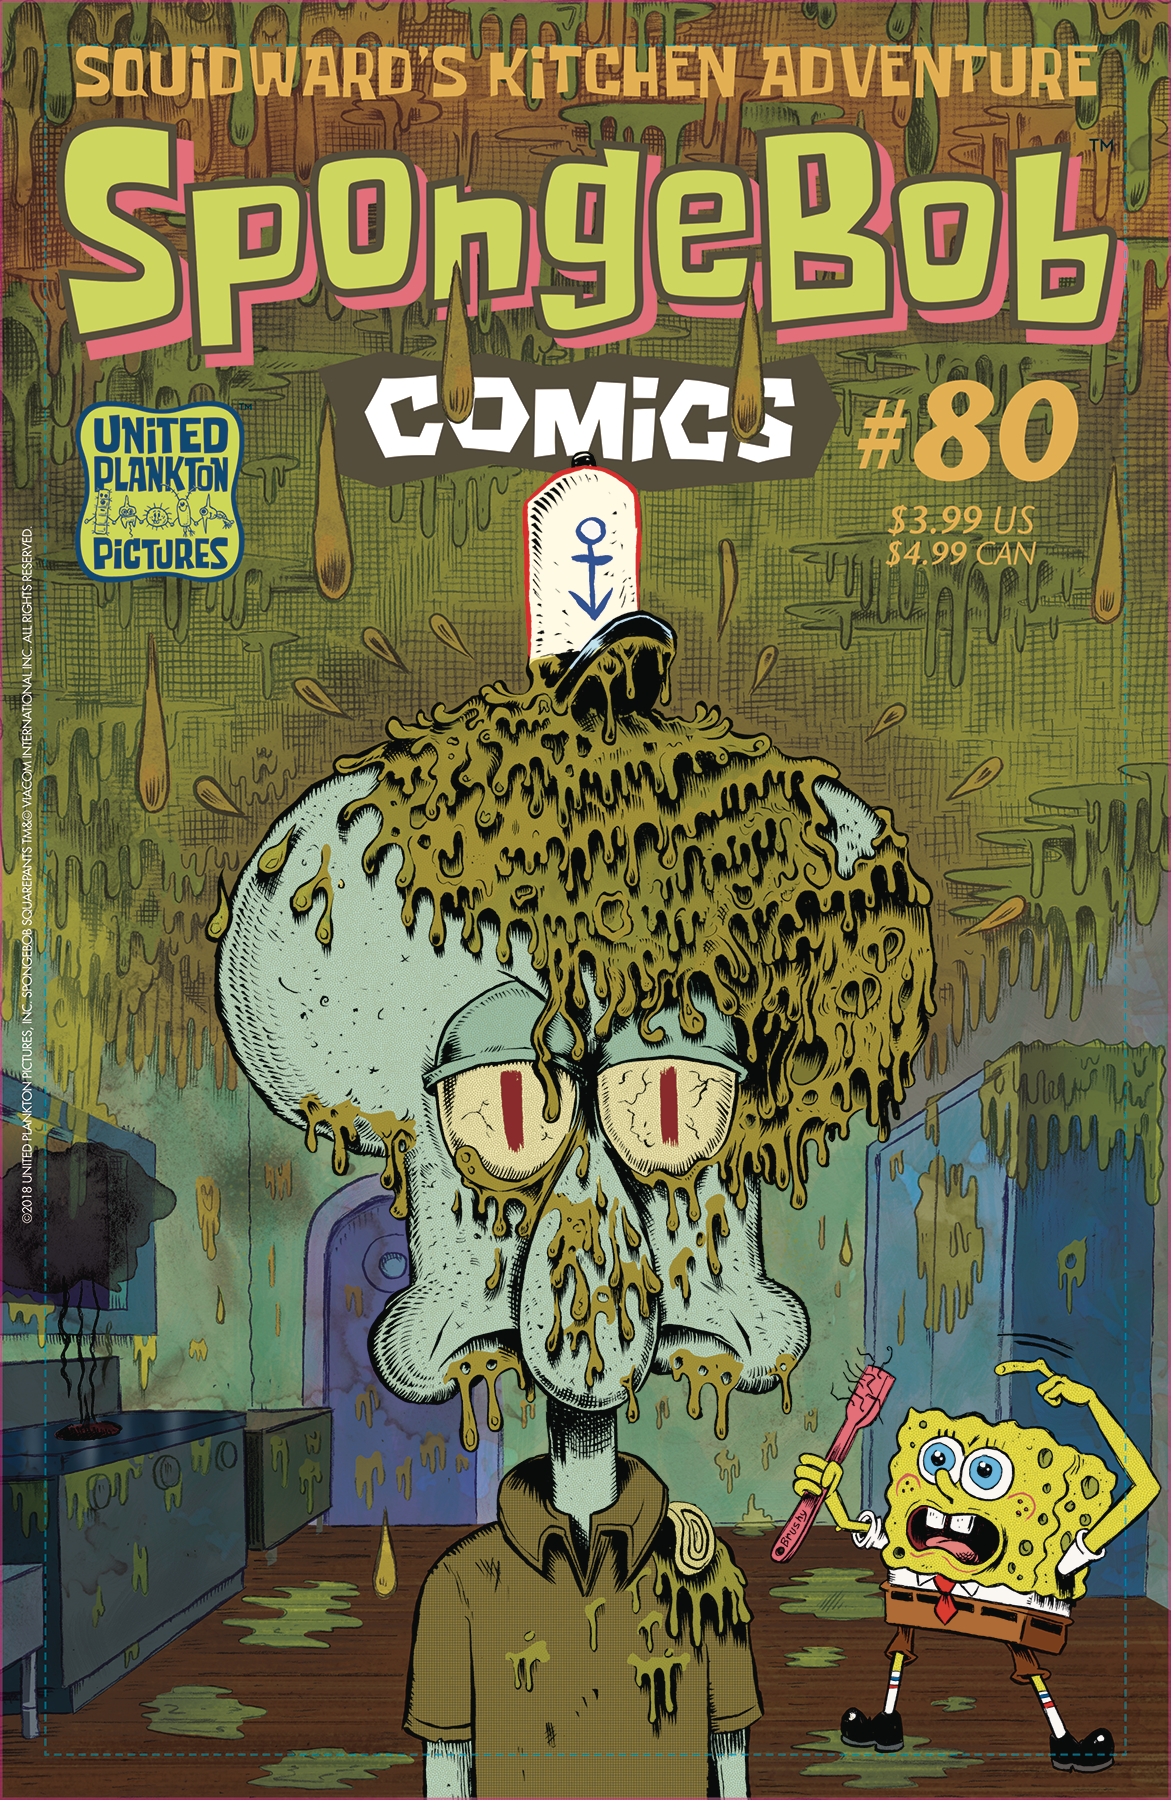 SPONGEBOB COMICS #80